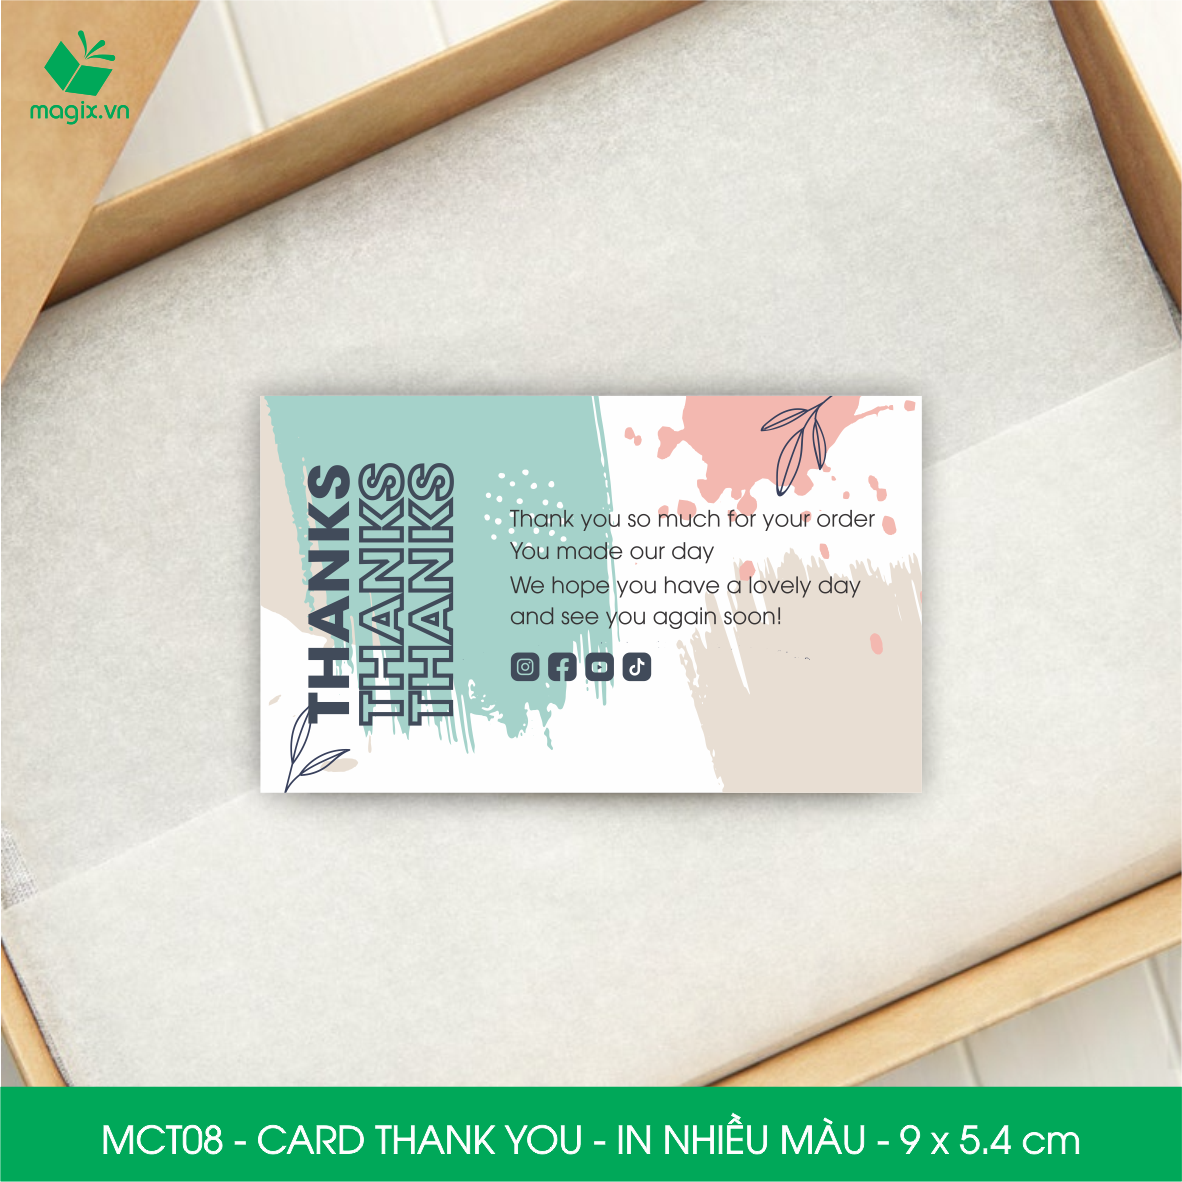 MCT08 - 9x5.4 cm - 1000 Card Thank you, Thiệp cảm ơn khách hàng, card cám ơn cứng cáp sang trọng